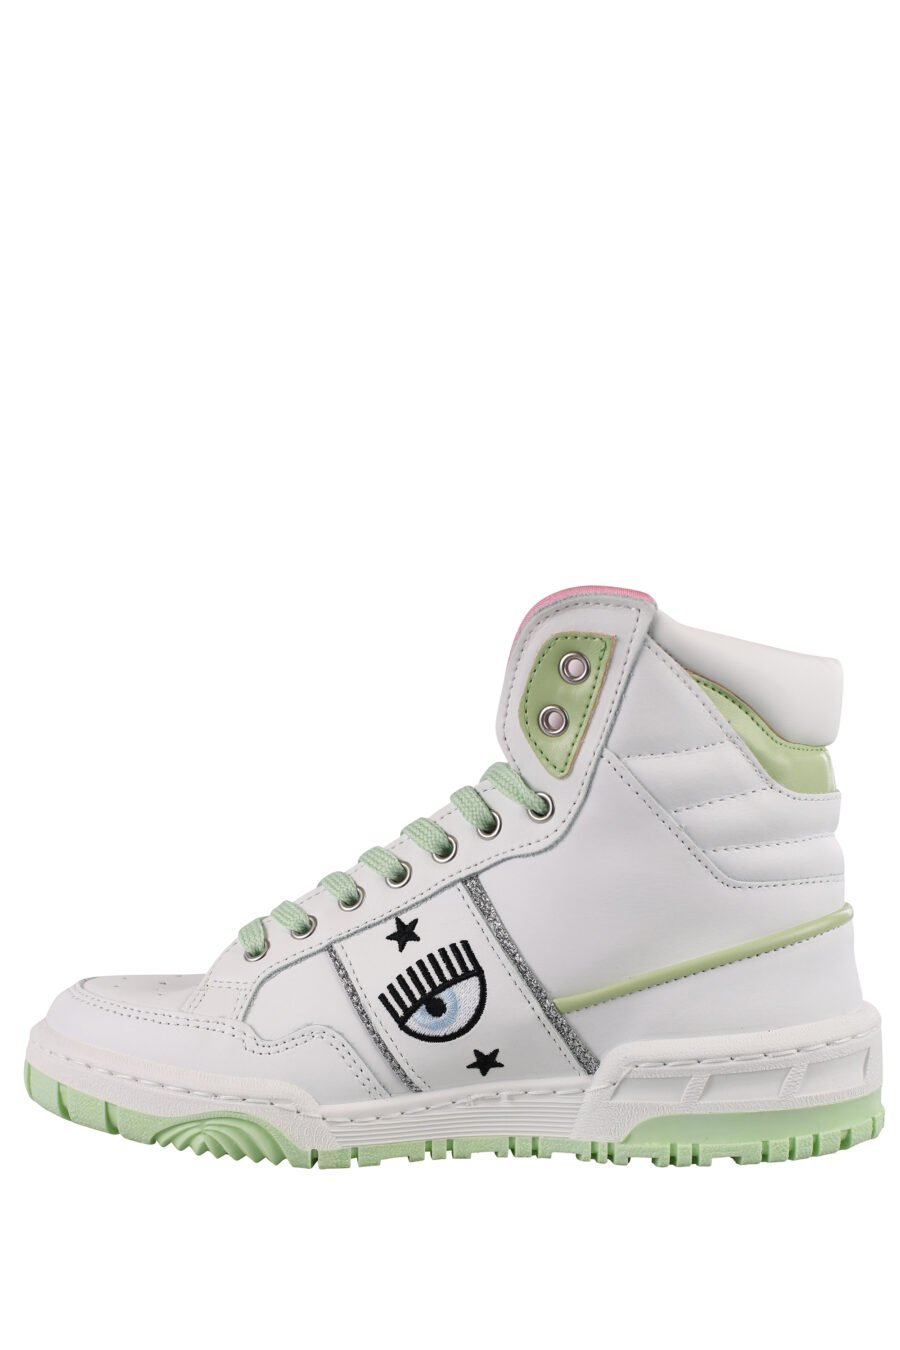 Zapatillas blancas y verde con logo ojo y detalles rosas - IMG 1173